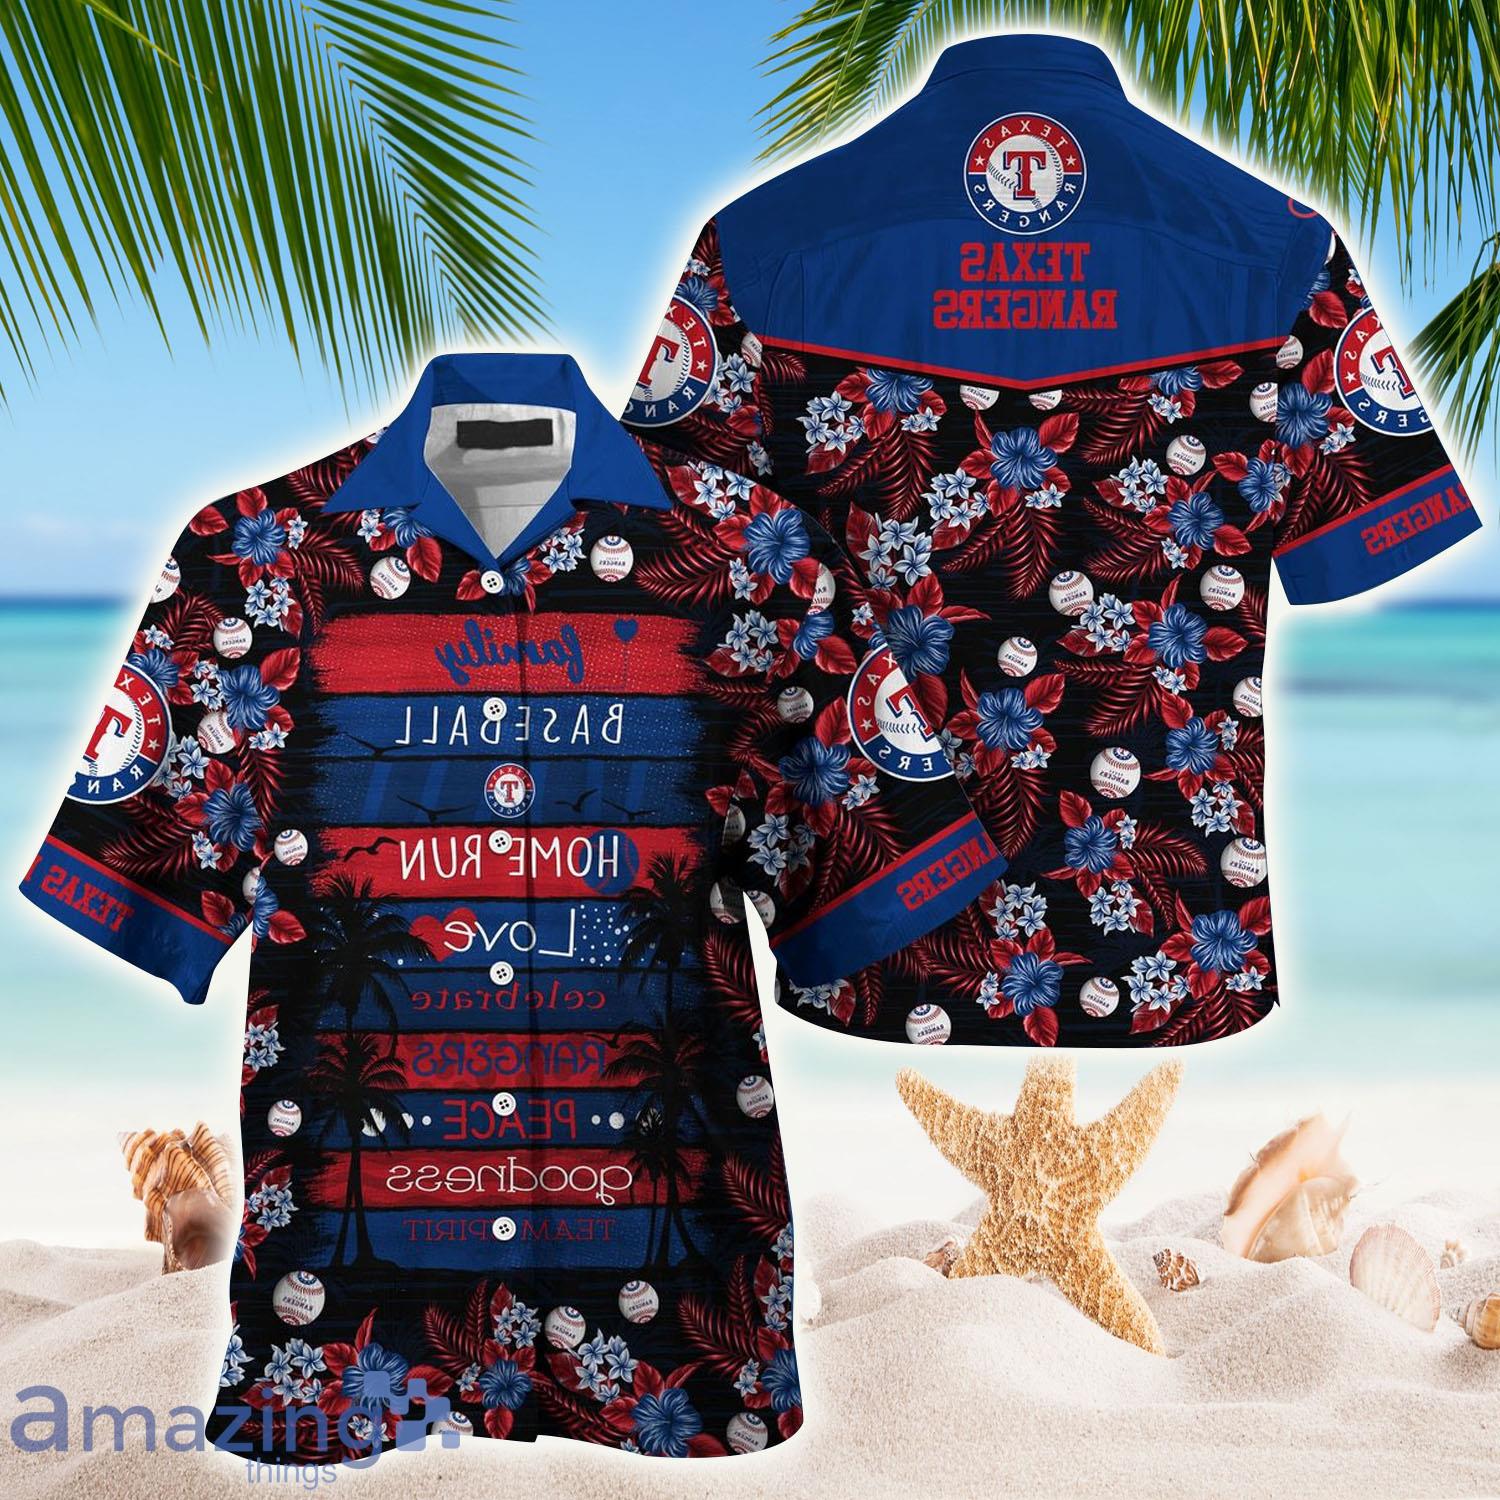 Texas Rangers MLB Hawaiian Shirt - Texas Rangers MLB Hawaiian Shirt